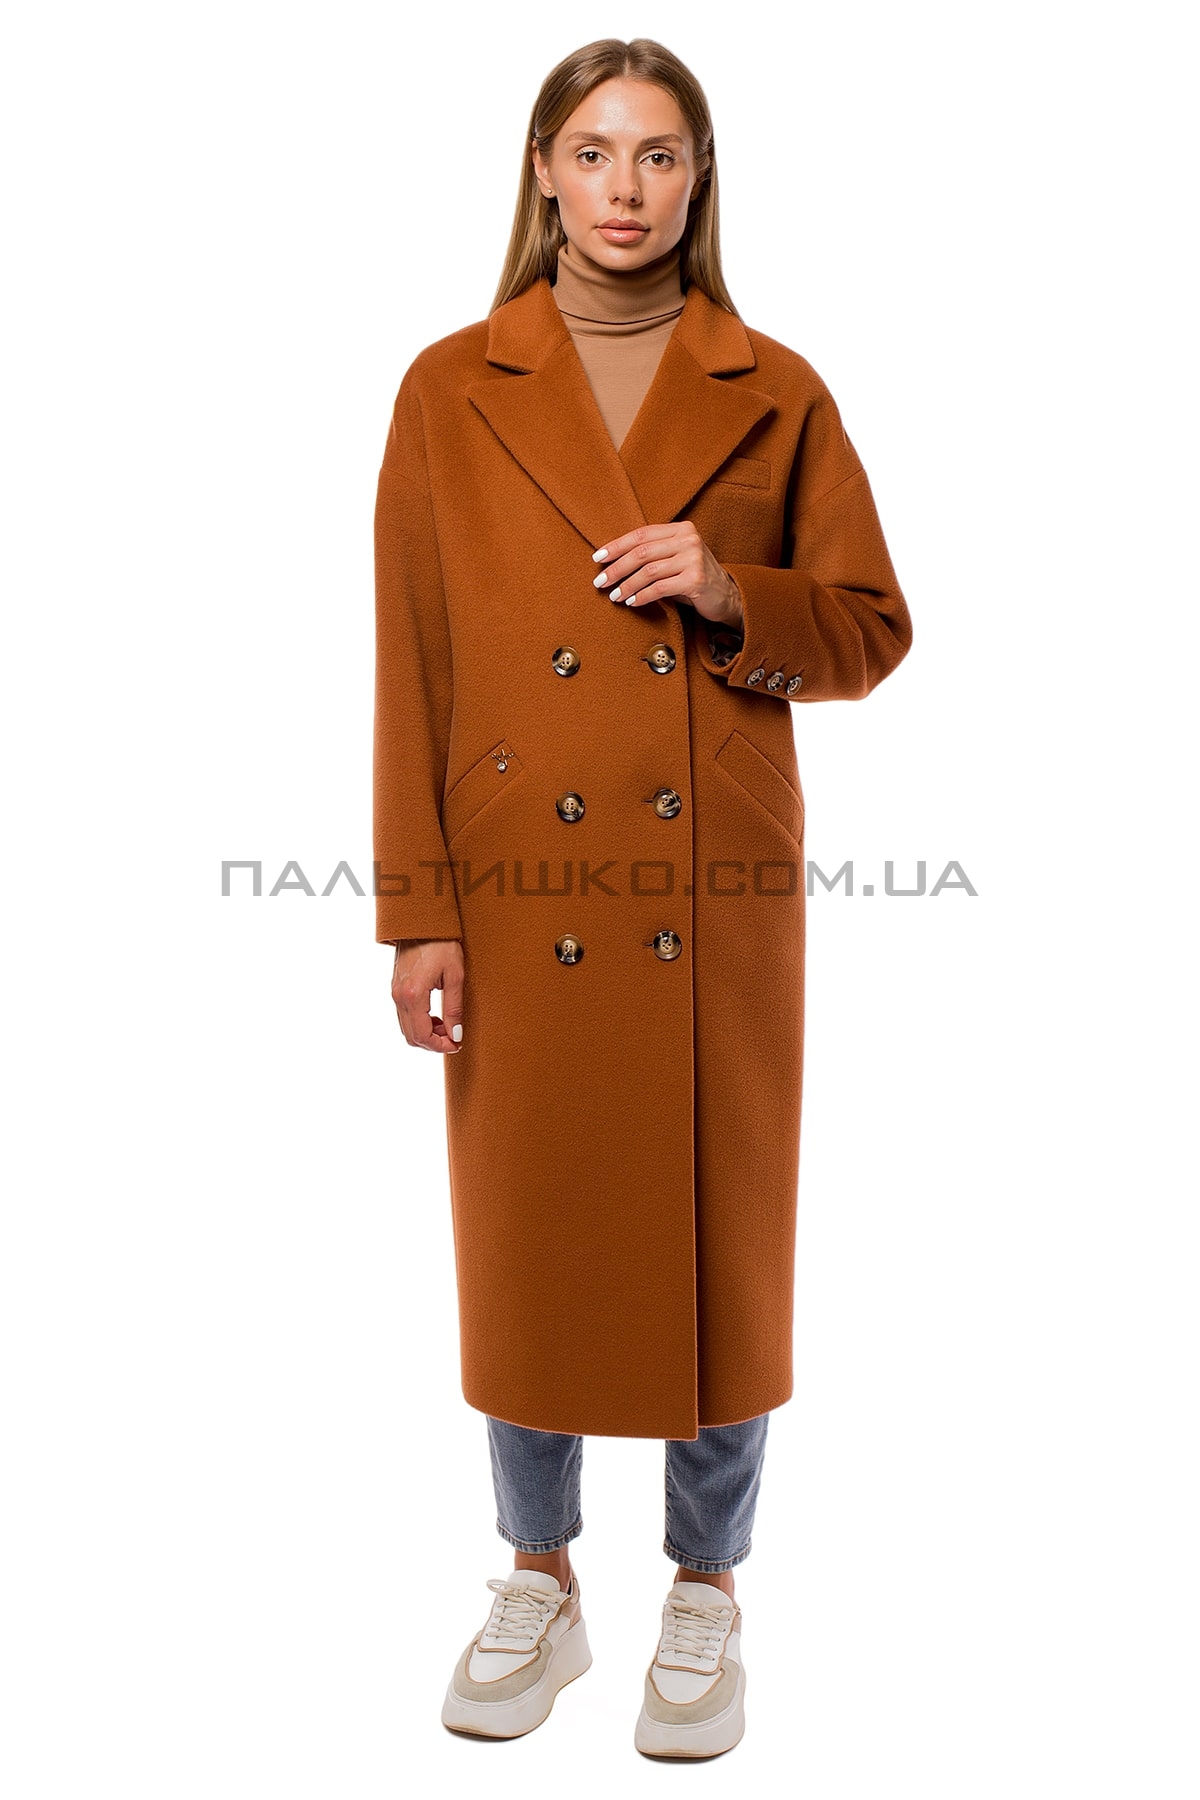  Женское пальто коричневое